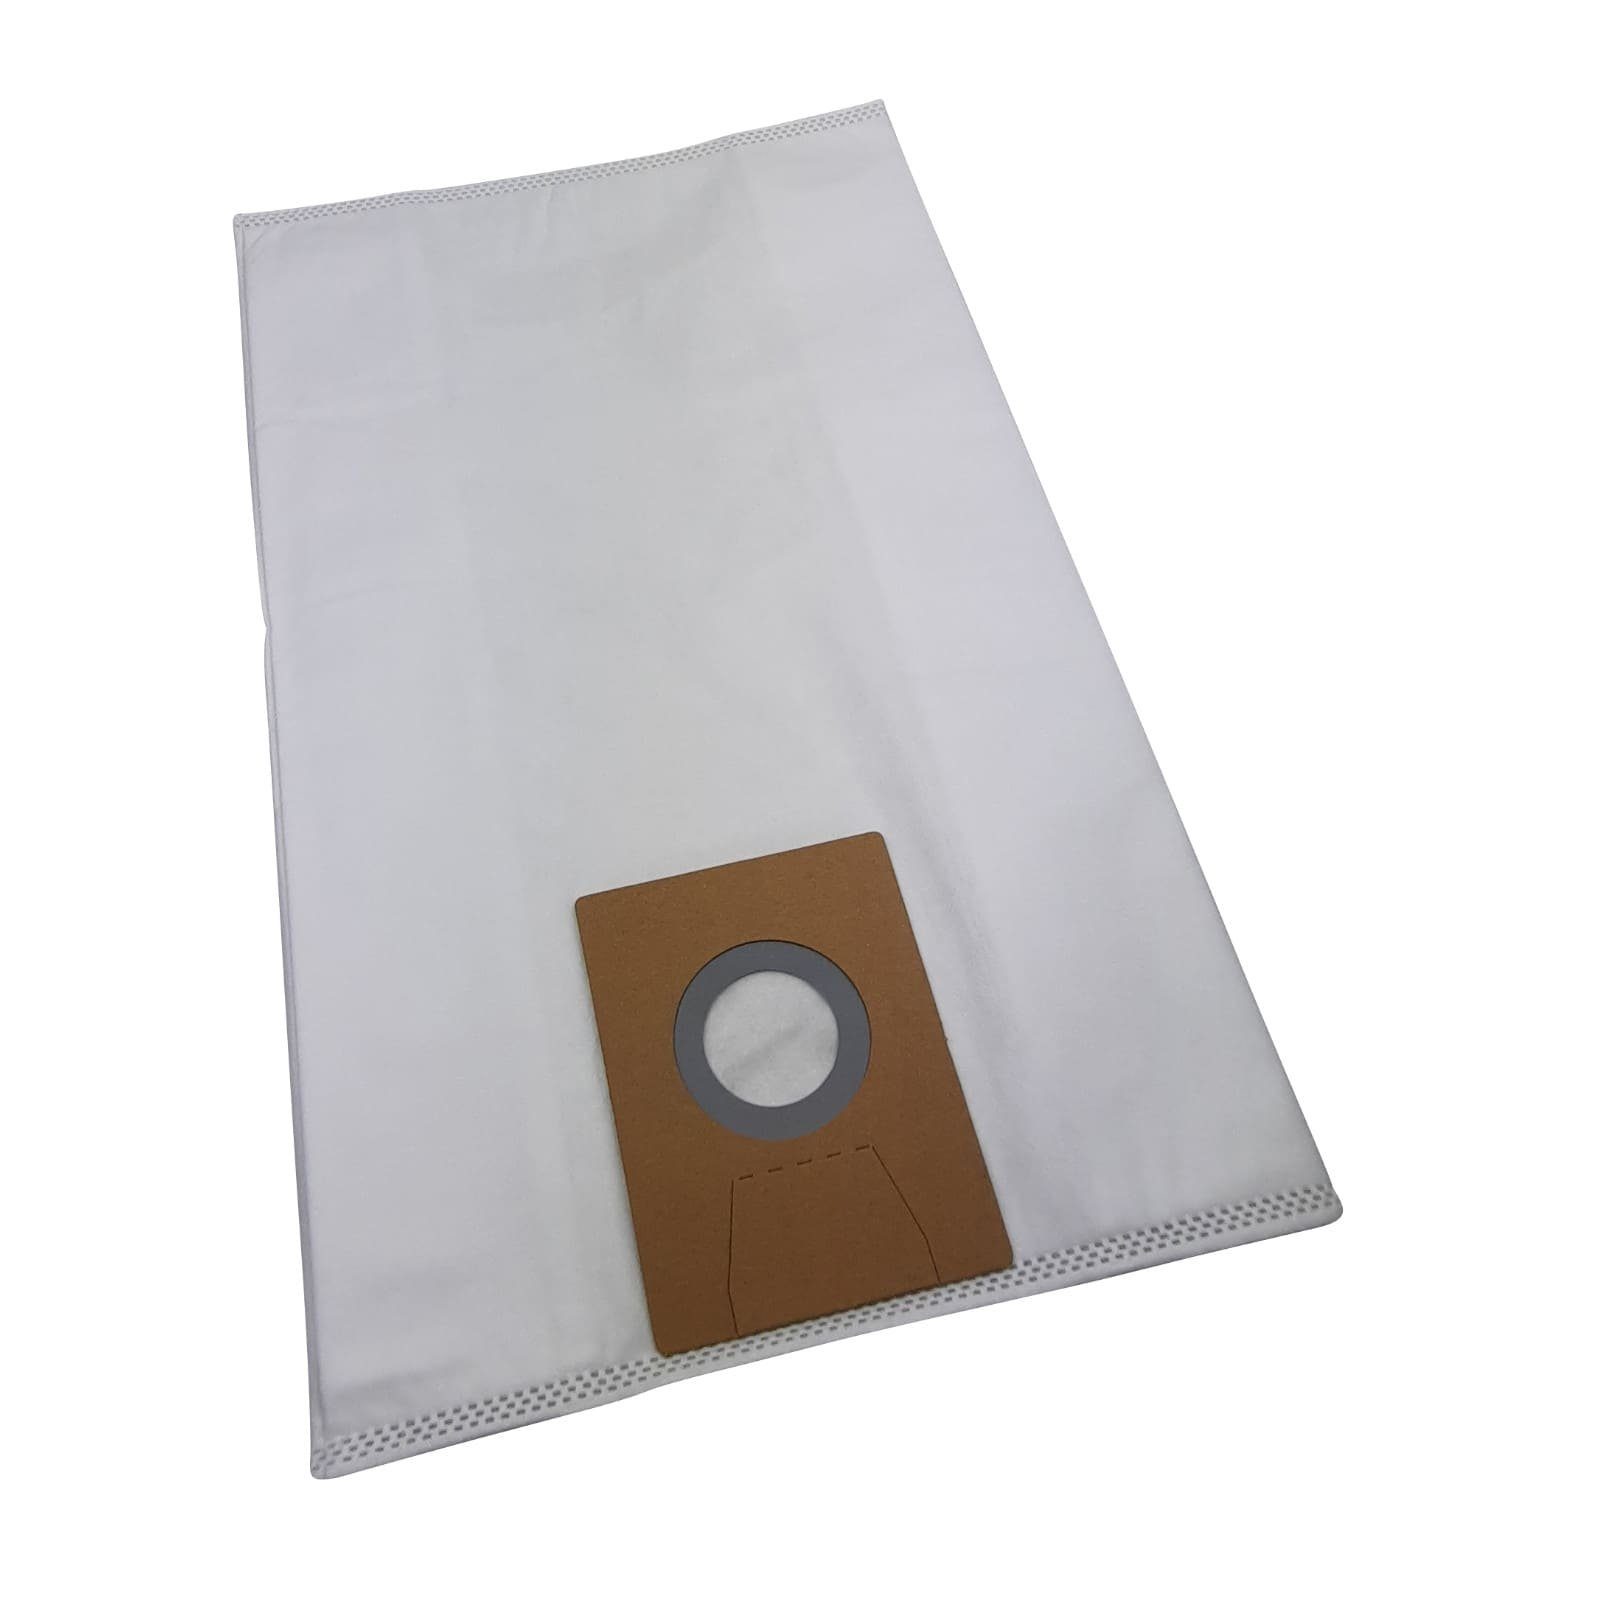 Reinica Staubsaugerbeutel passend für Clean a la Card K103200941, 10er-Pack Staubbeutel Saugerbeutel Beutel Filtertüten